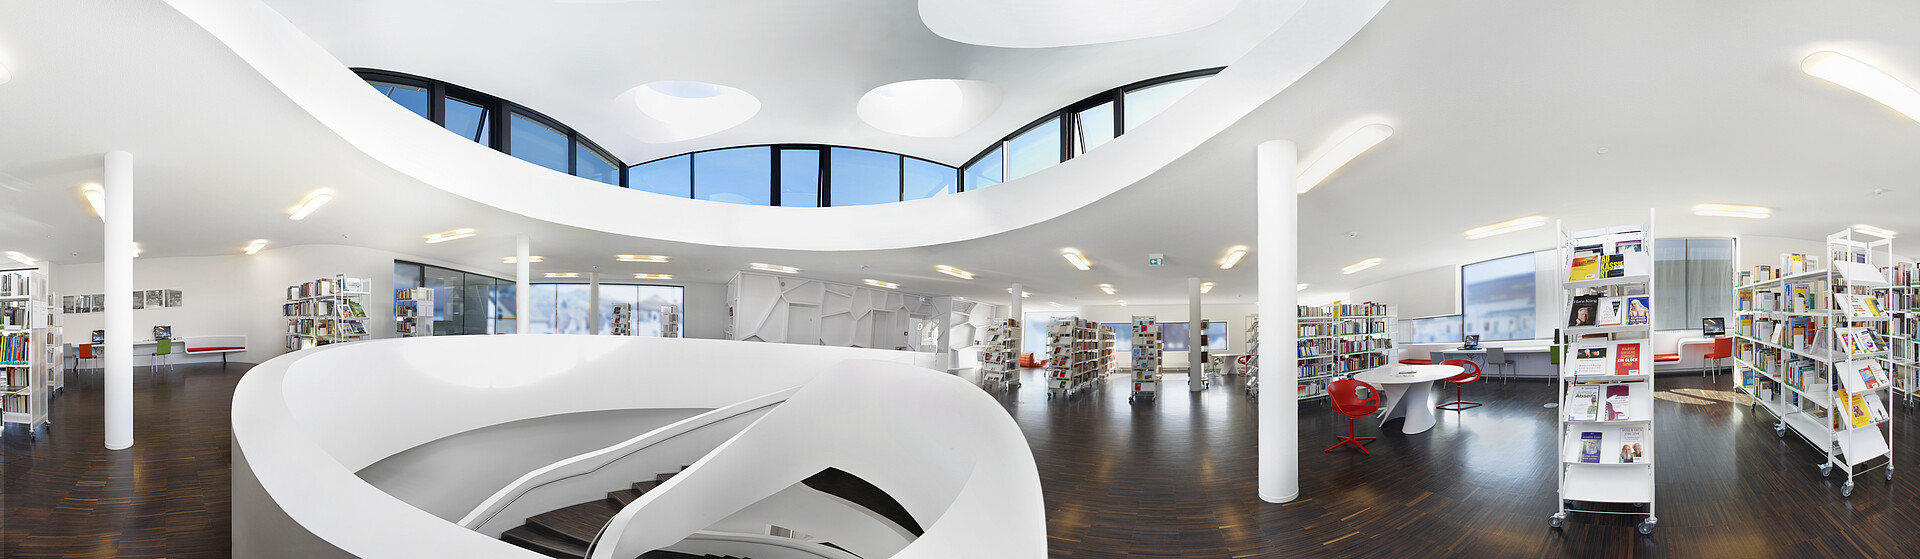 Das Bild zeigt eine Bibliothek in Oberkirch